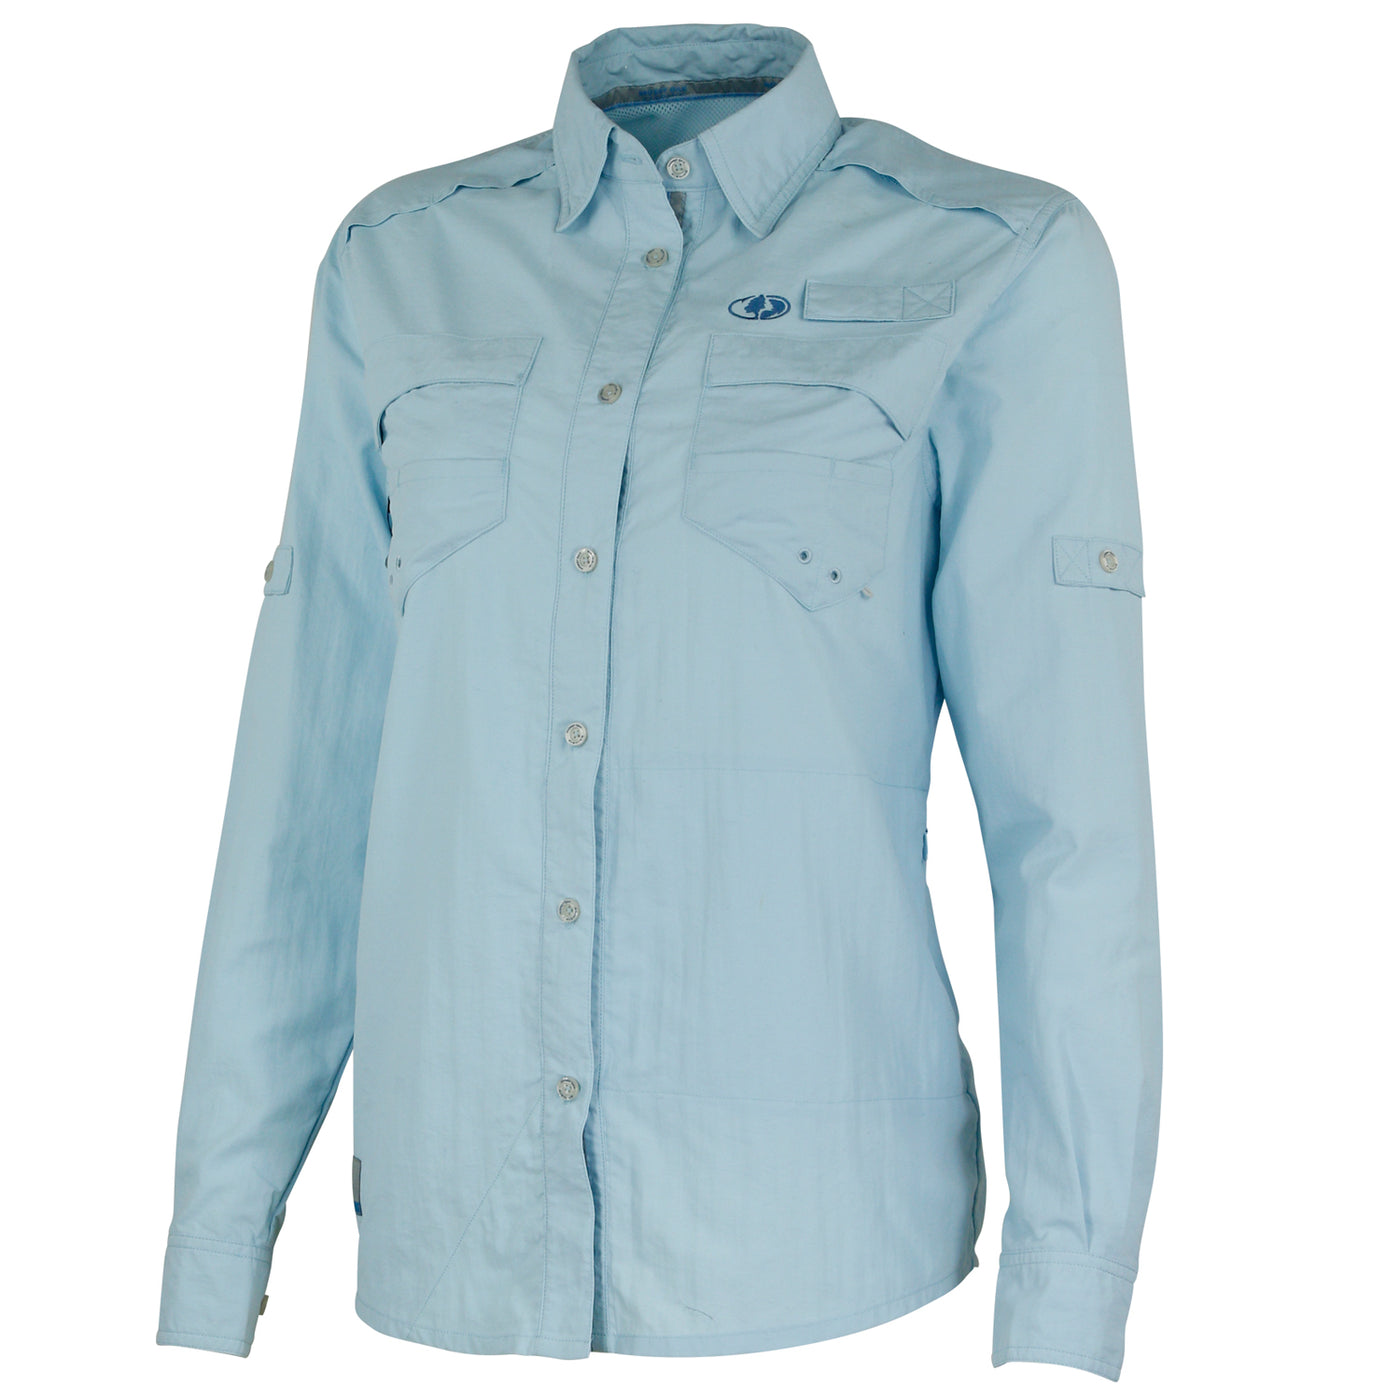 Mossy Oak Women's Long Sleeve Fishing Shirt Button Down Cool Blue